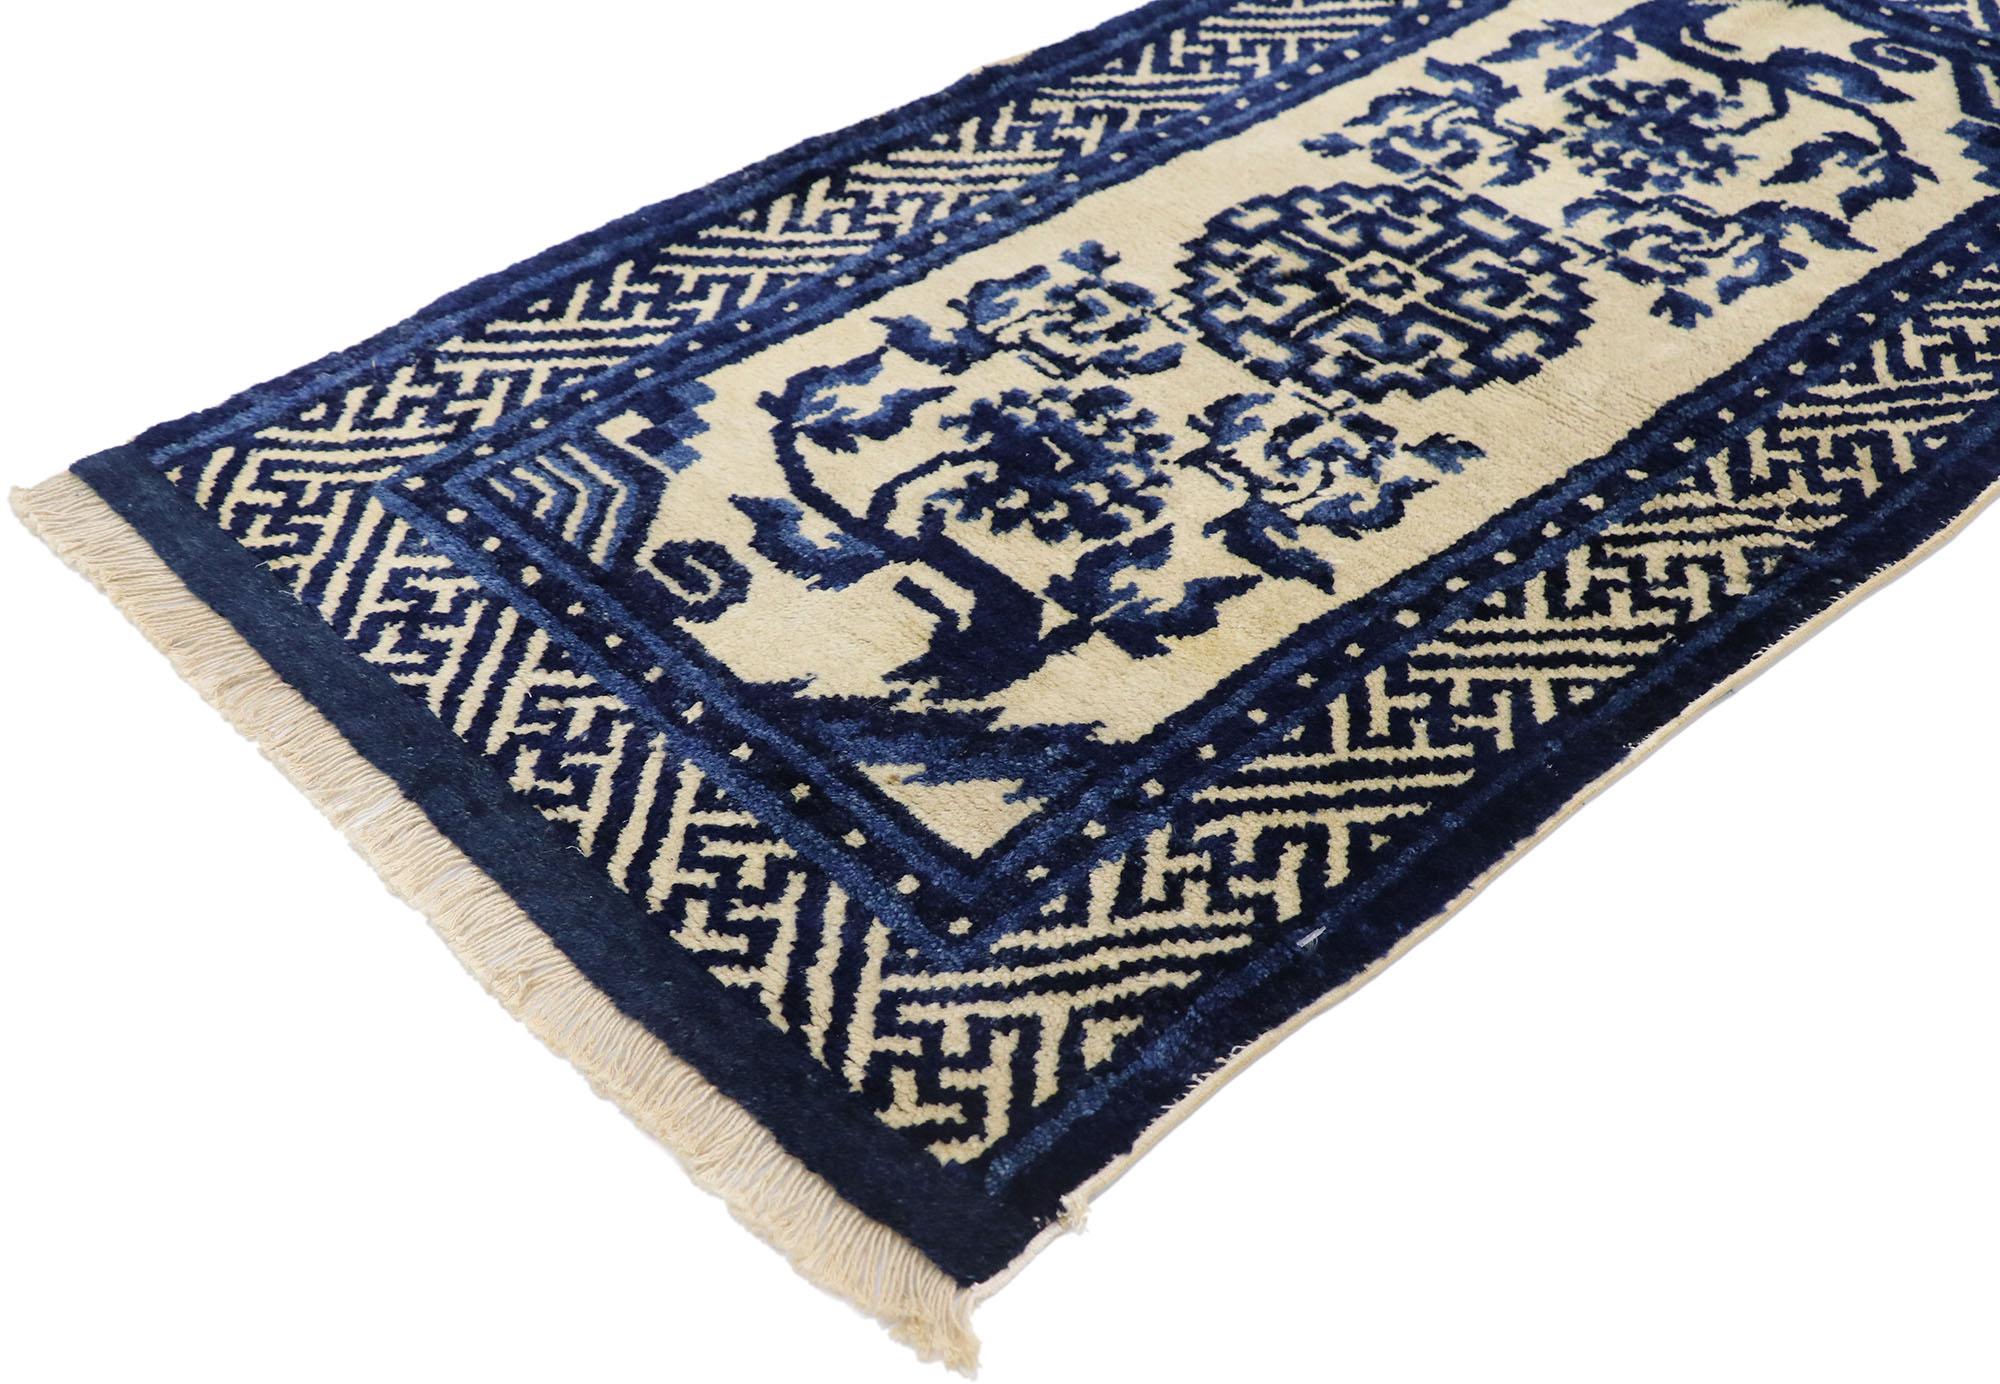 77773 antique Tapis chinois de Pékin en soie avec style Chinoiserie moderne 02'01 x 04'00. Ce tapis chinois ancien en soie noué à la main présente un médaillon ajouré arrondi au centre, entouré d'une rosette centrale. De gracieux motifs floraux